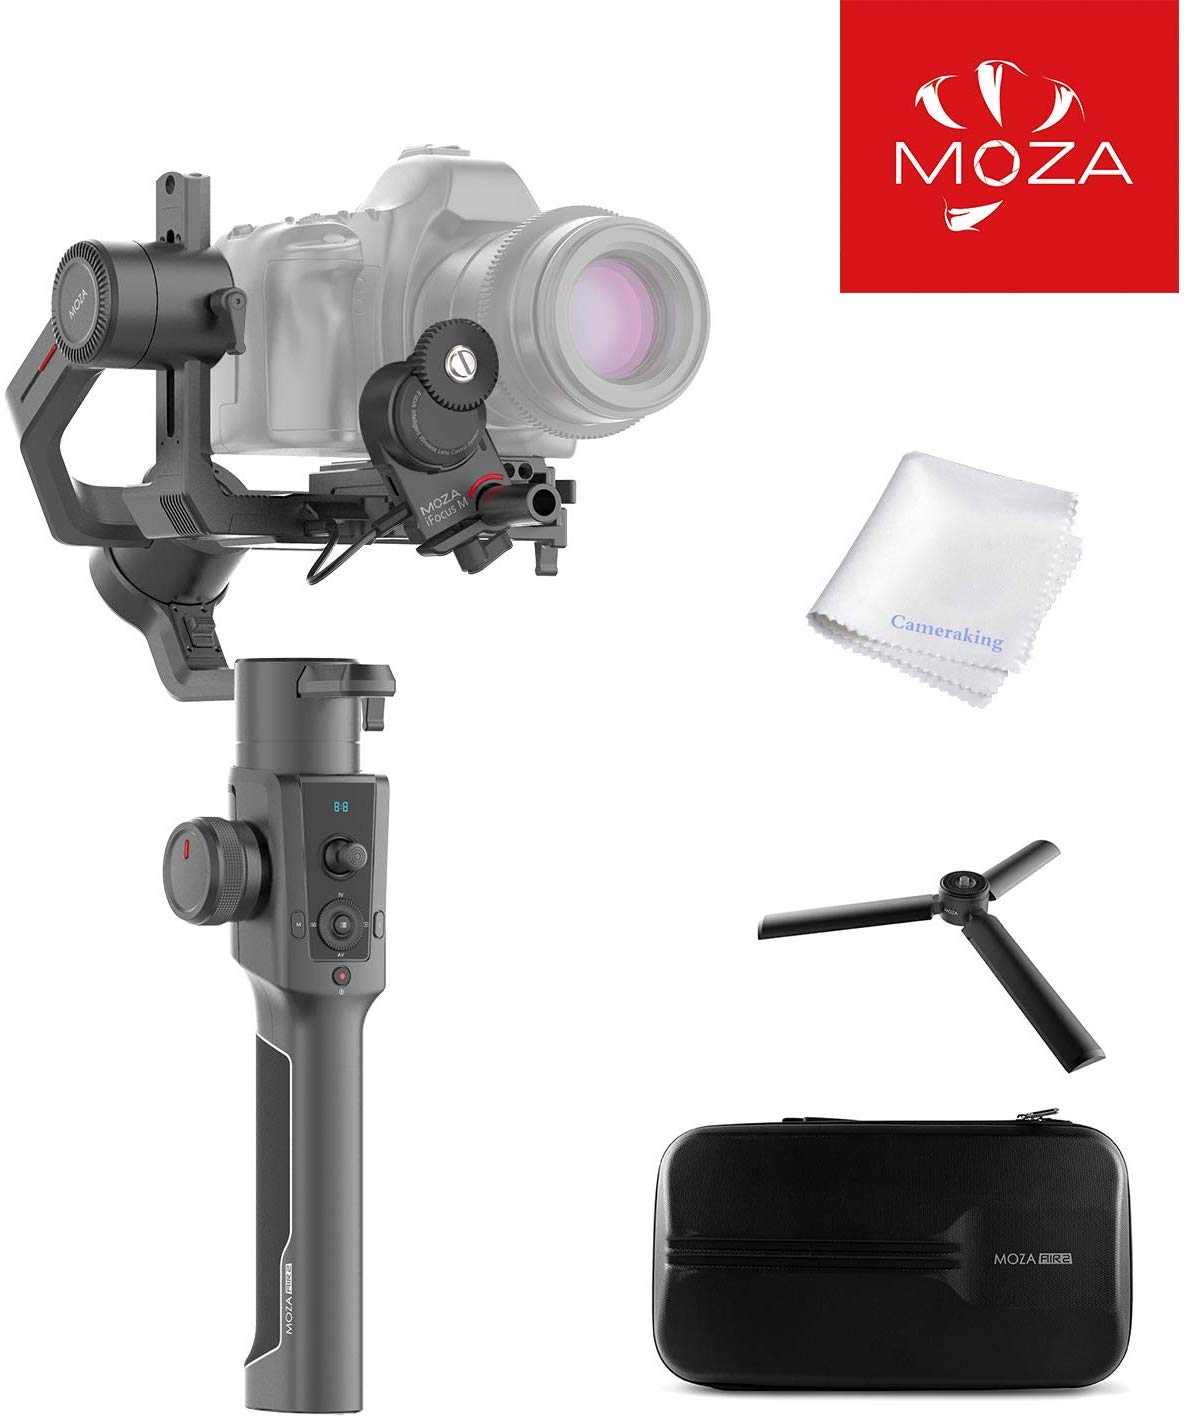 Moza Air2 Handheld Gimbal for Mirrorless Cameras